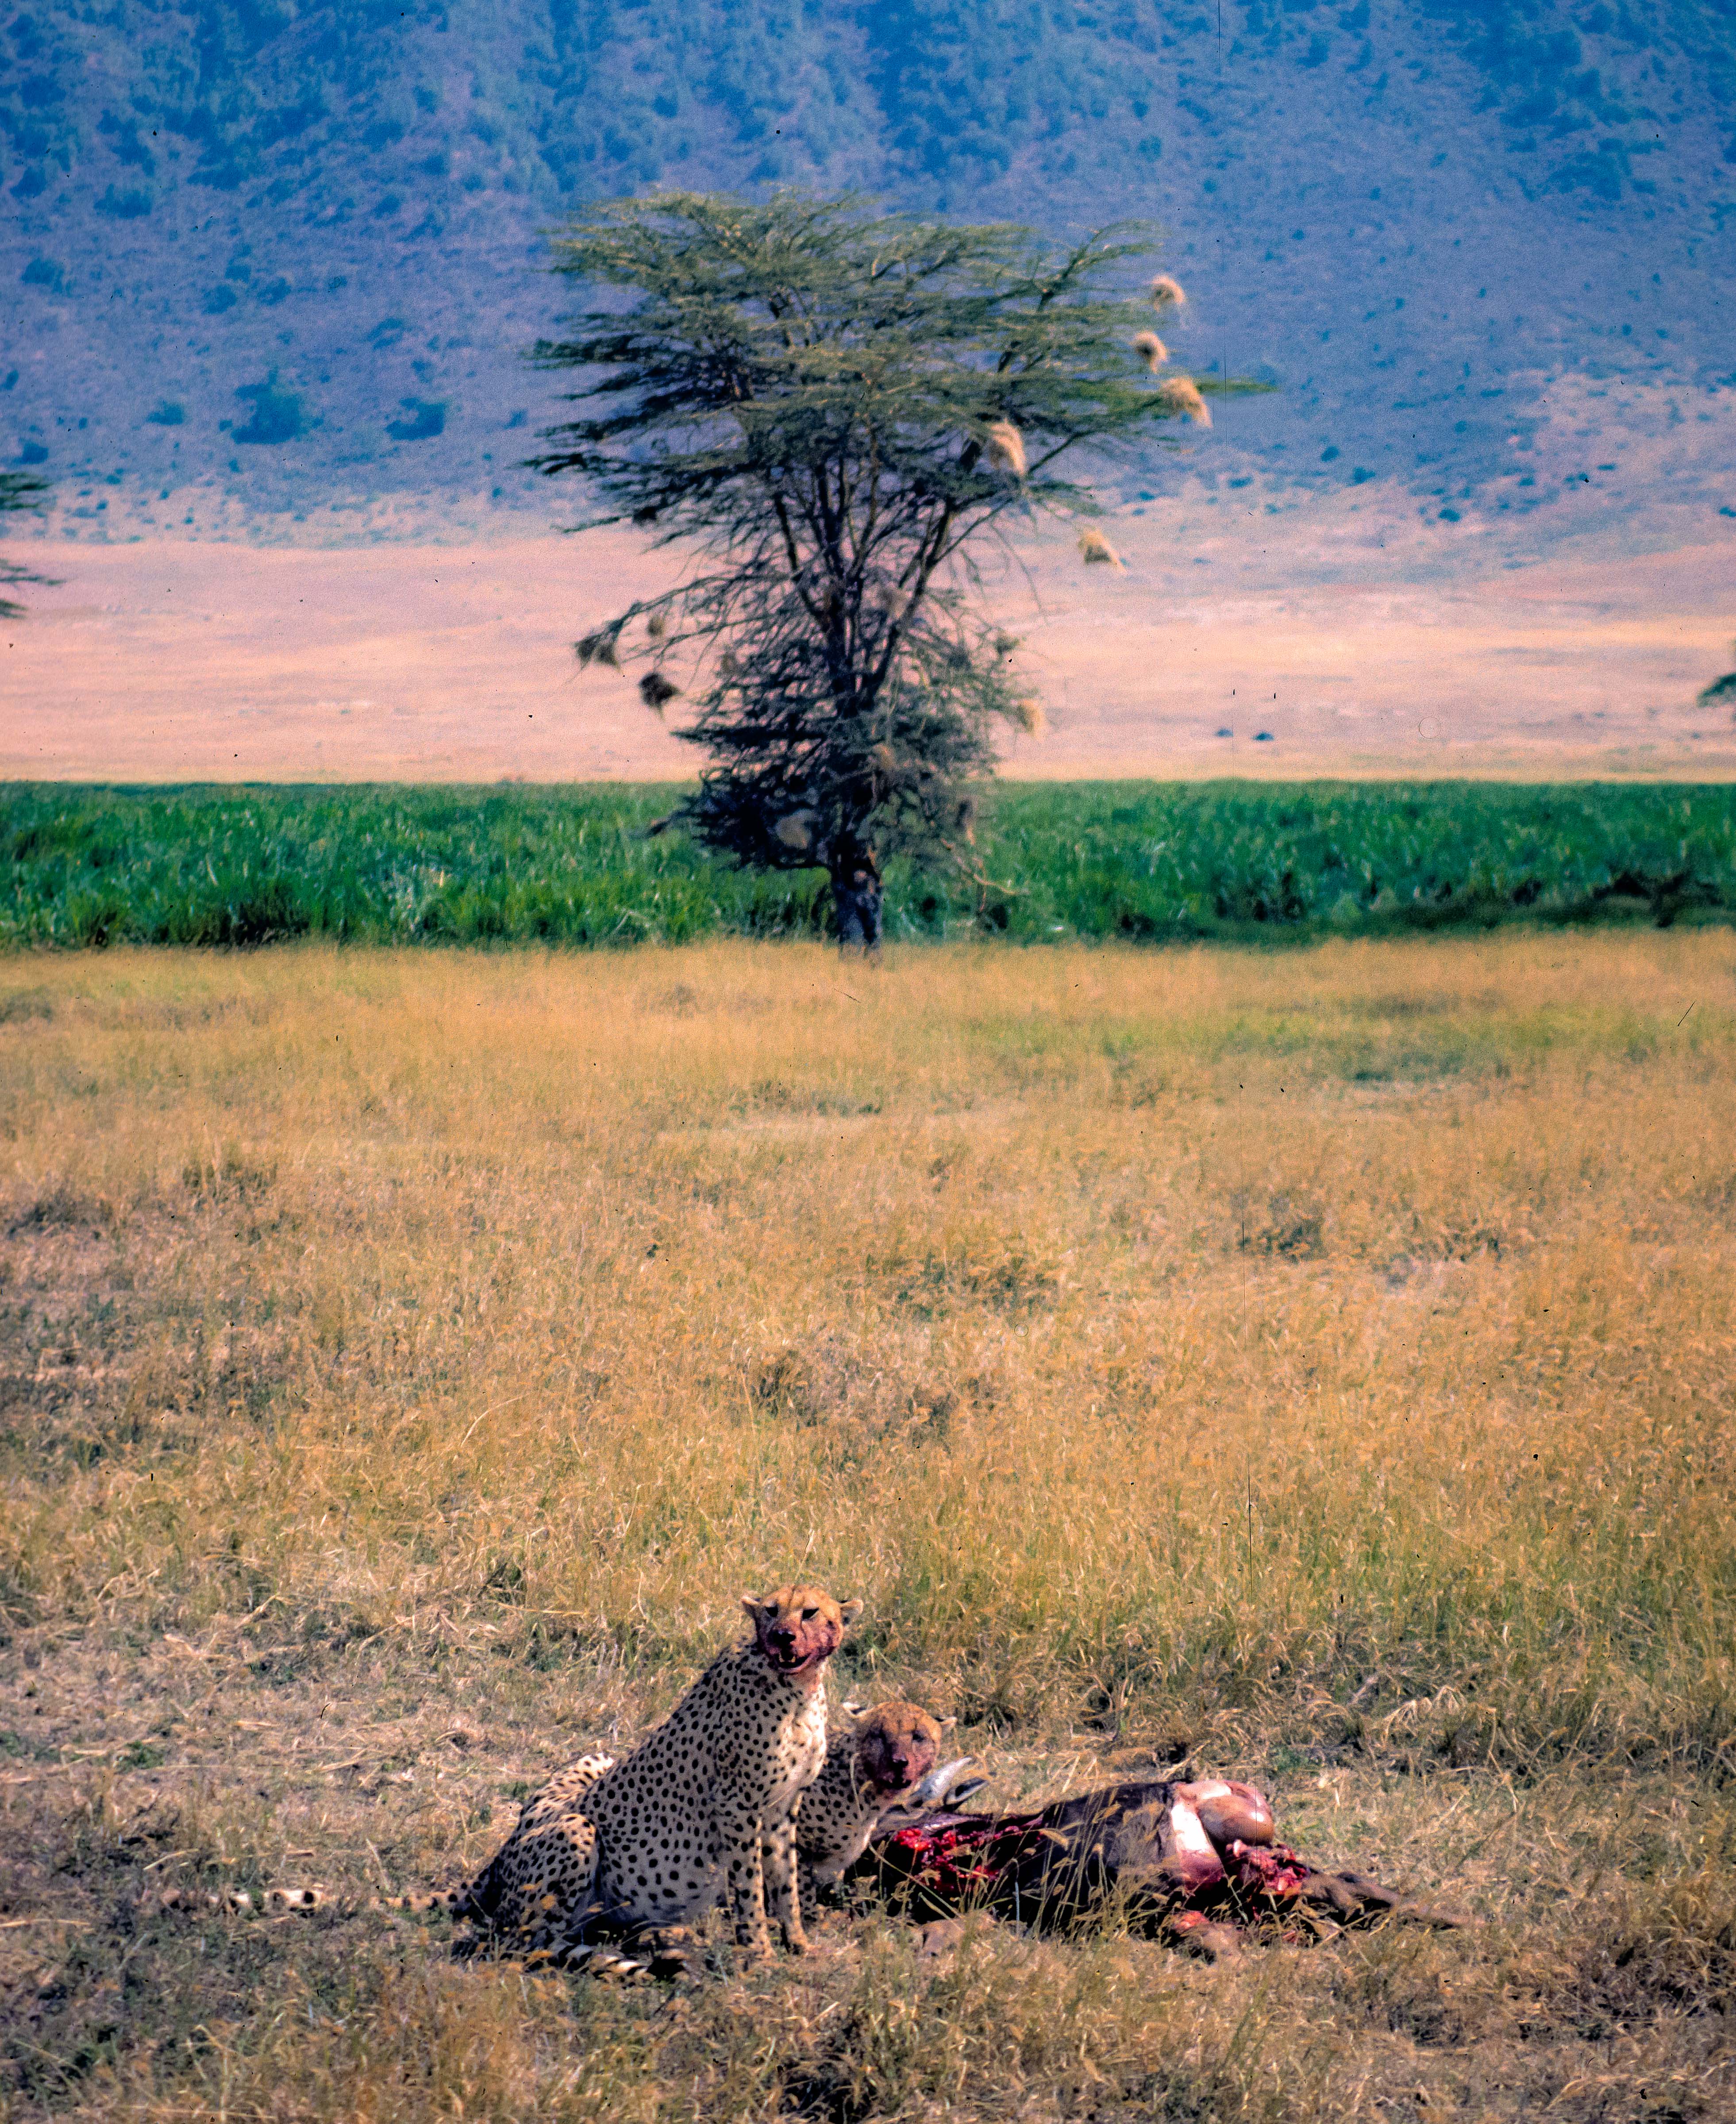 Tanzania, Cheetahs with Kill (far view), 1984